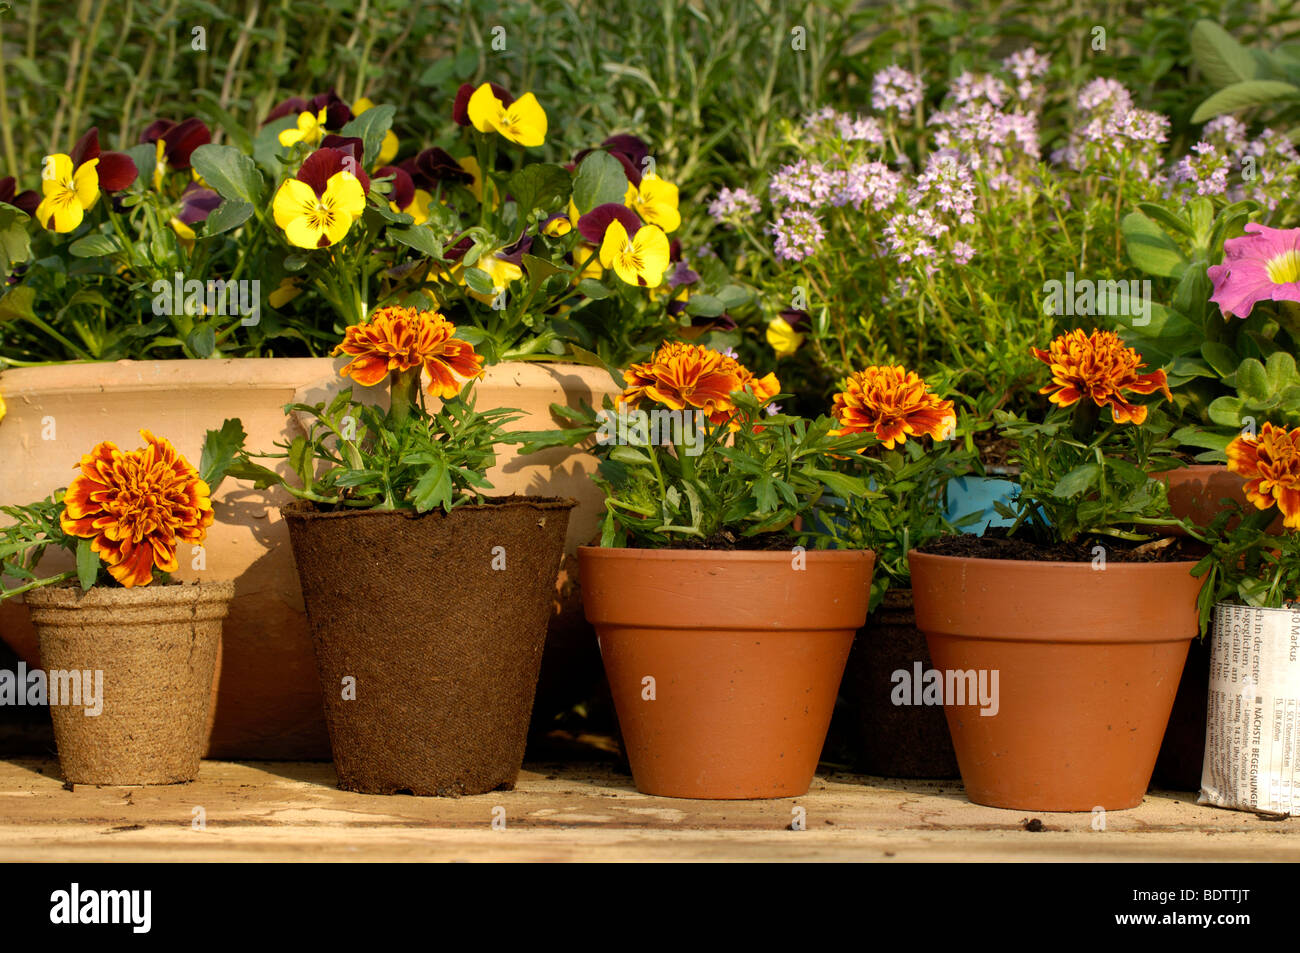 Young plants, tagetes und thyme, Thymus citriodorus, Pflanzenanzucht, Tagetes, Studentenblume und Thymian, Thymus citriodorus Stock Photo